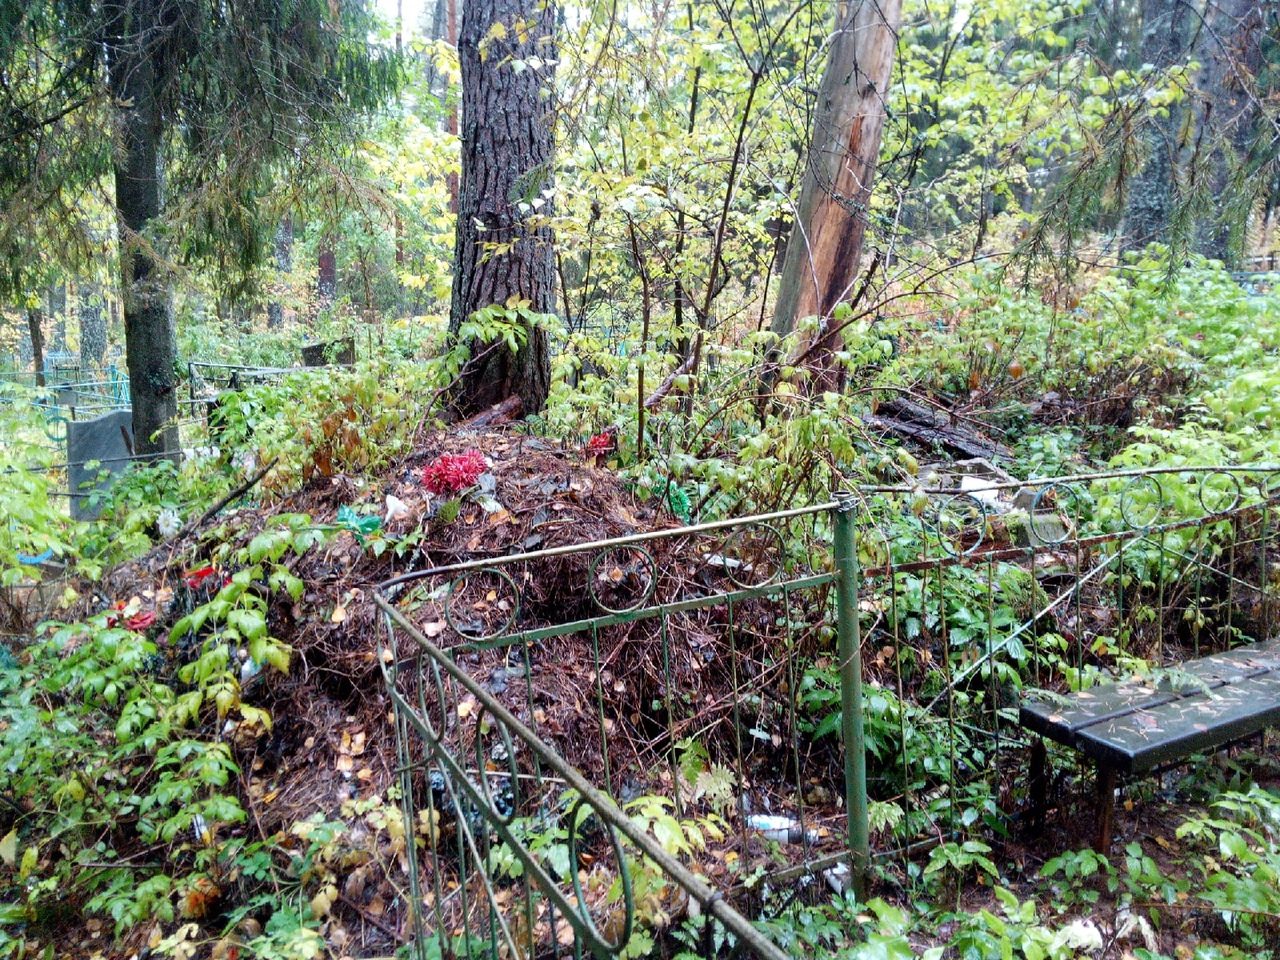 В Кировской области не могут очистить заваленное мусором кладбище